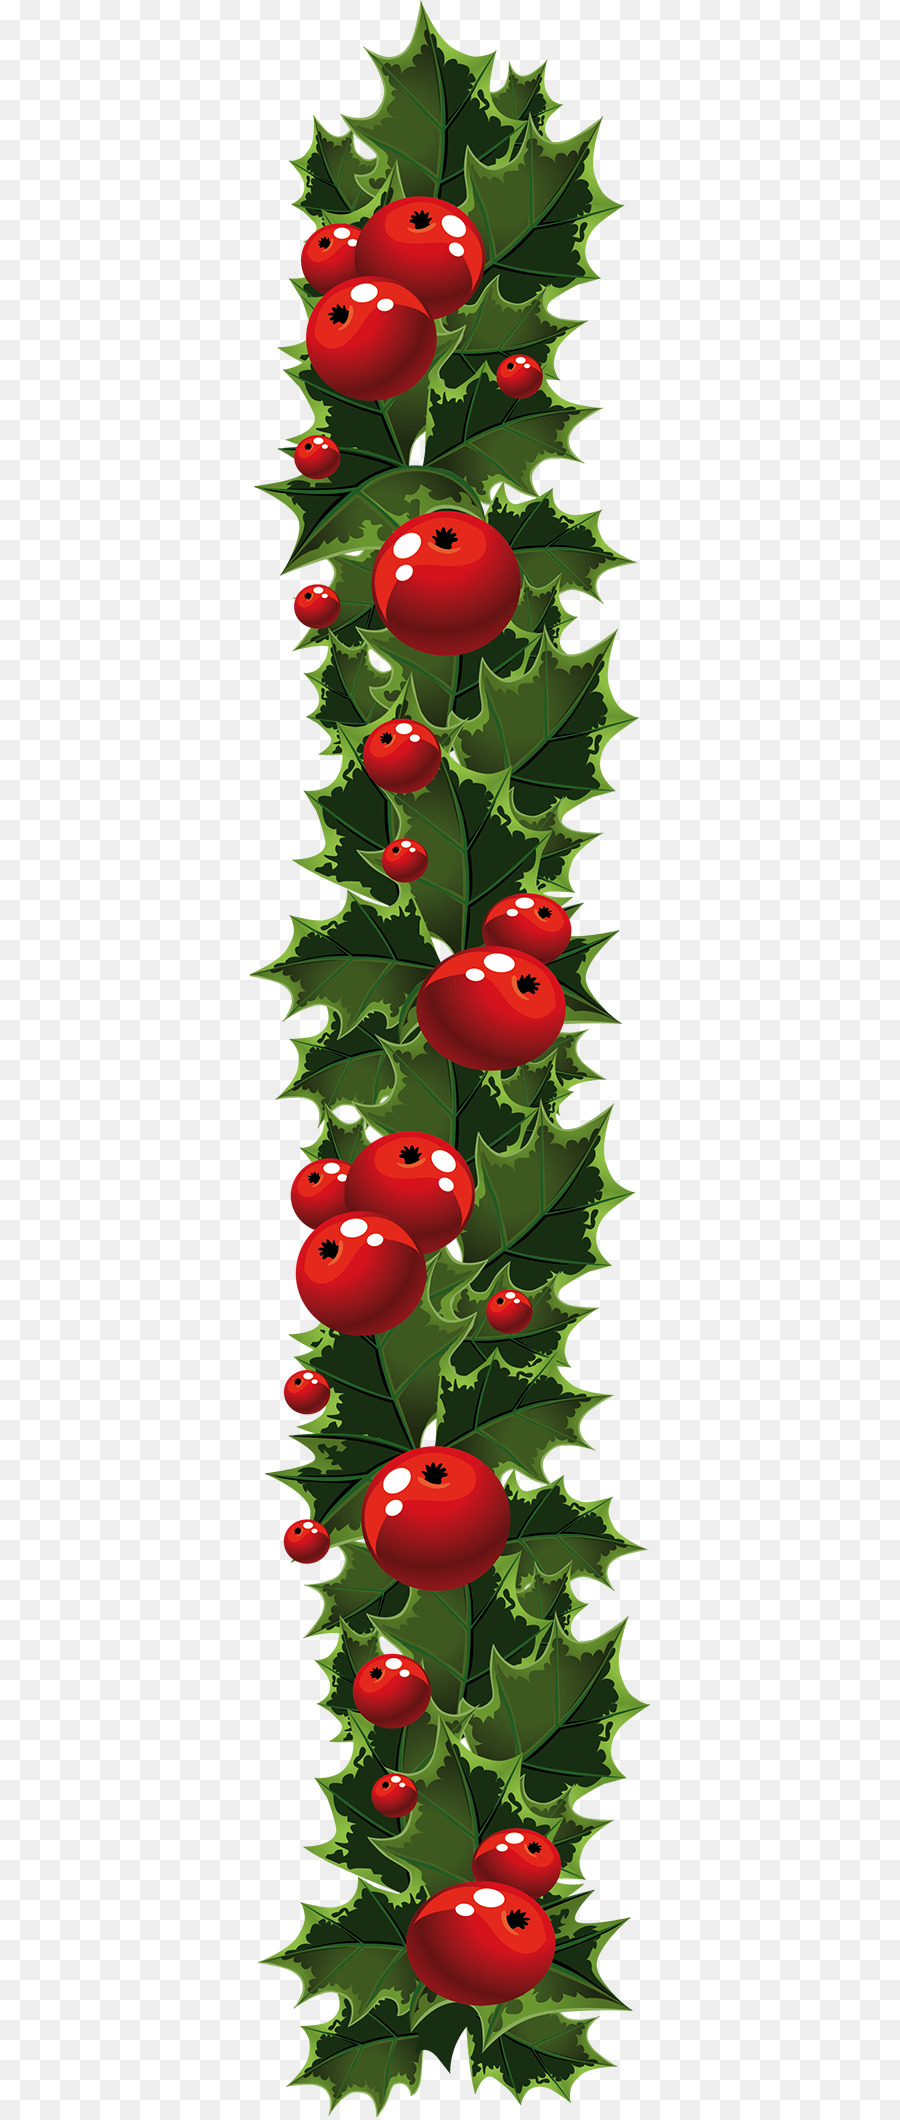 Garland Christmas Wreath Clip art - garland png download - 400*2117 - Free Transparent Garland png Download.